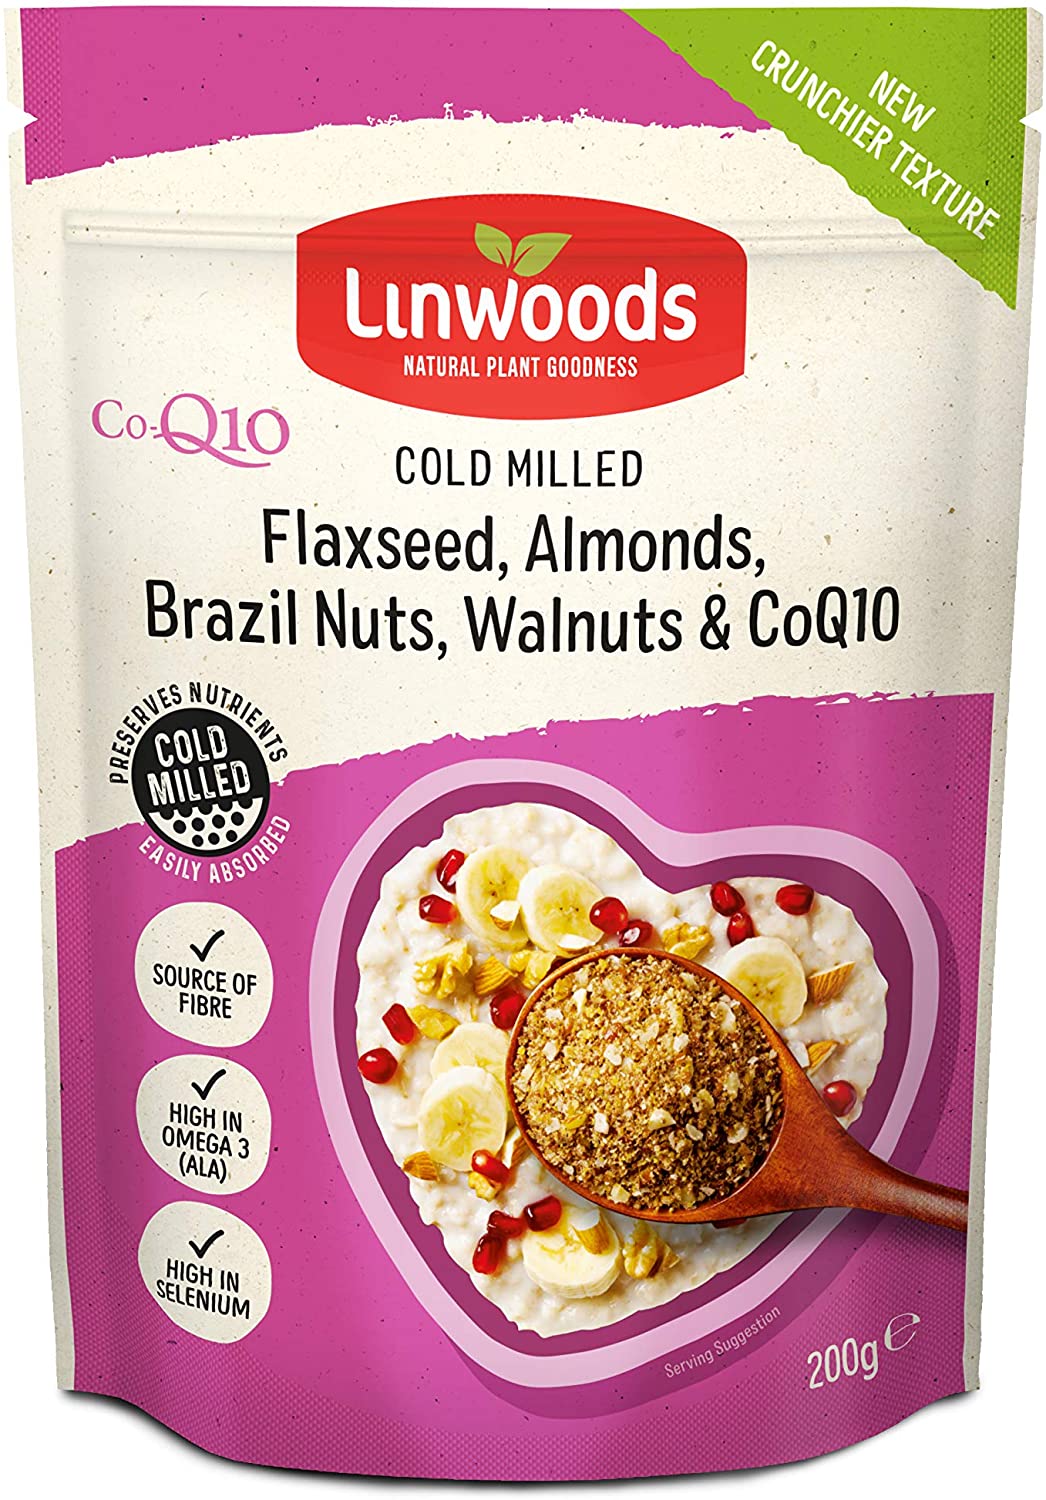 Linwoods Flaxseed, Almonds, Brazil, Walnuts CoQ10 Milled